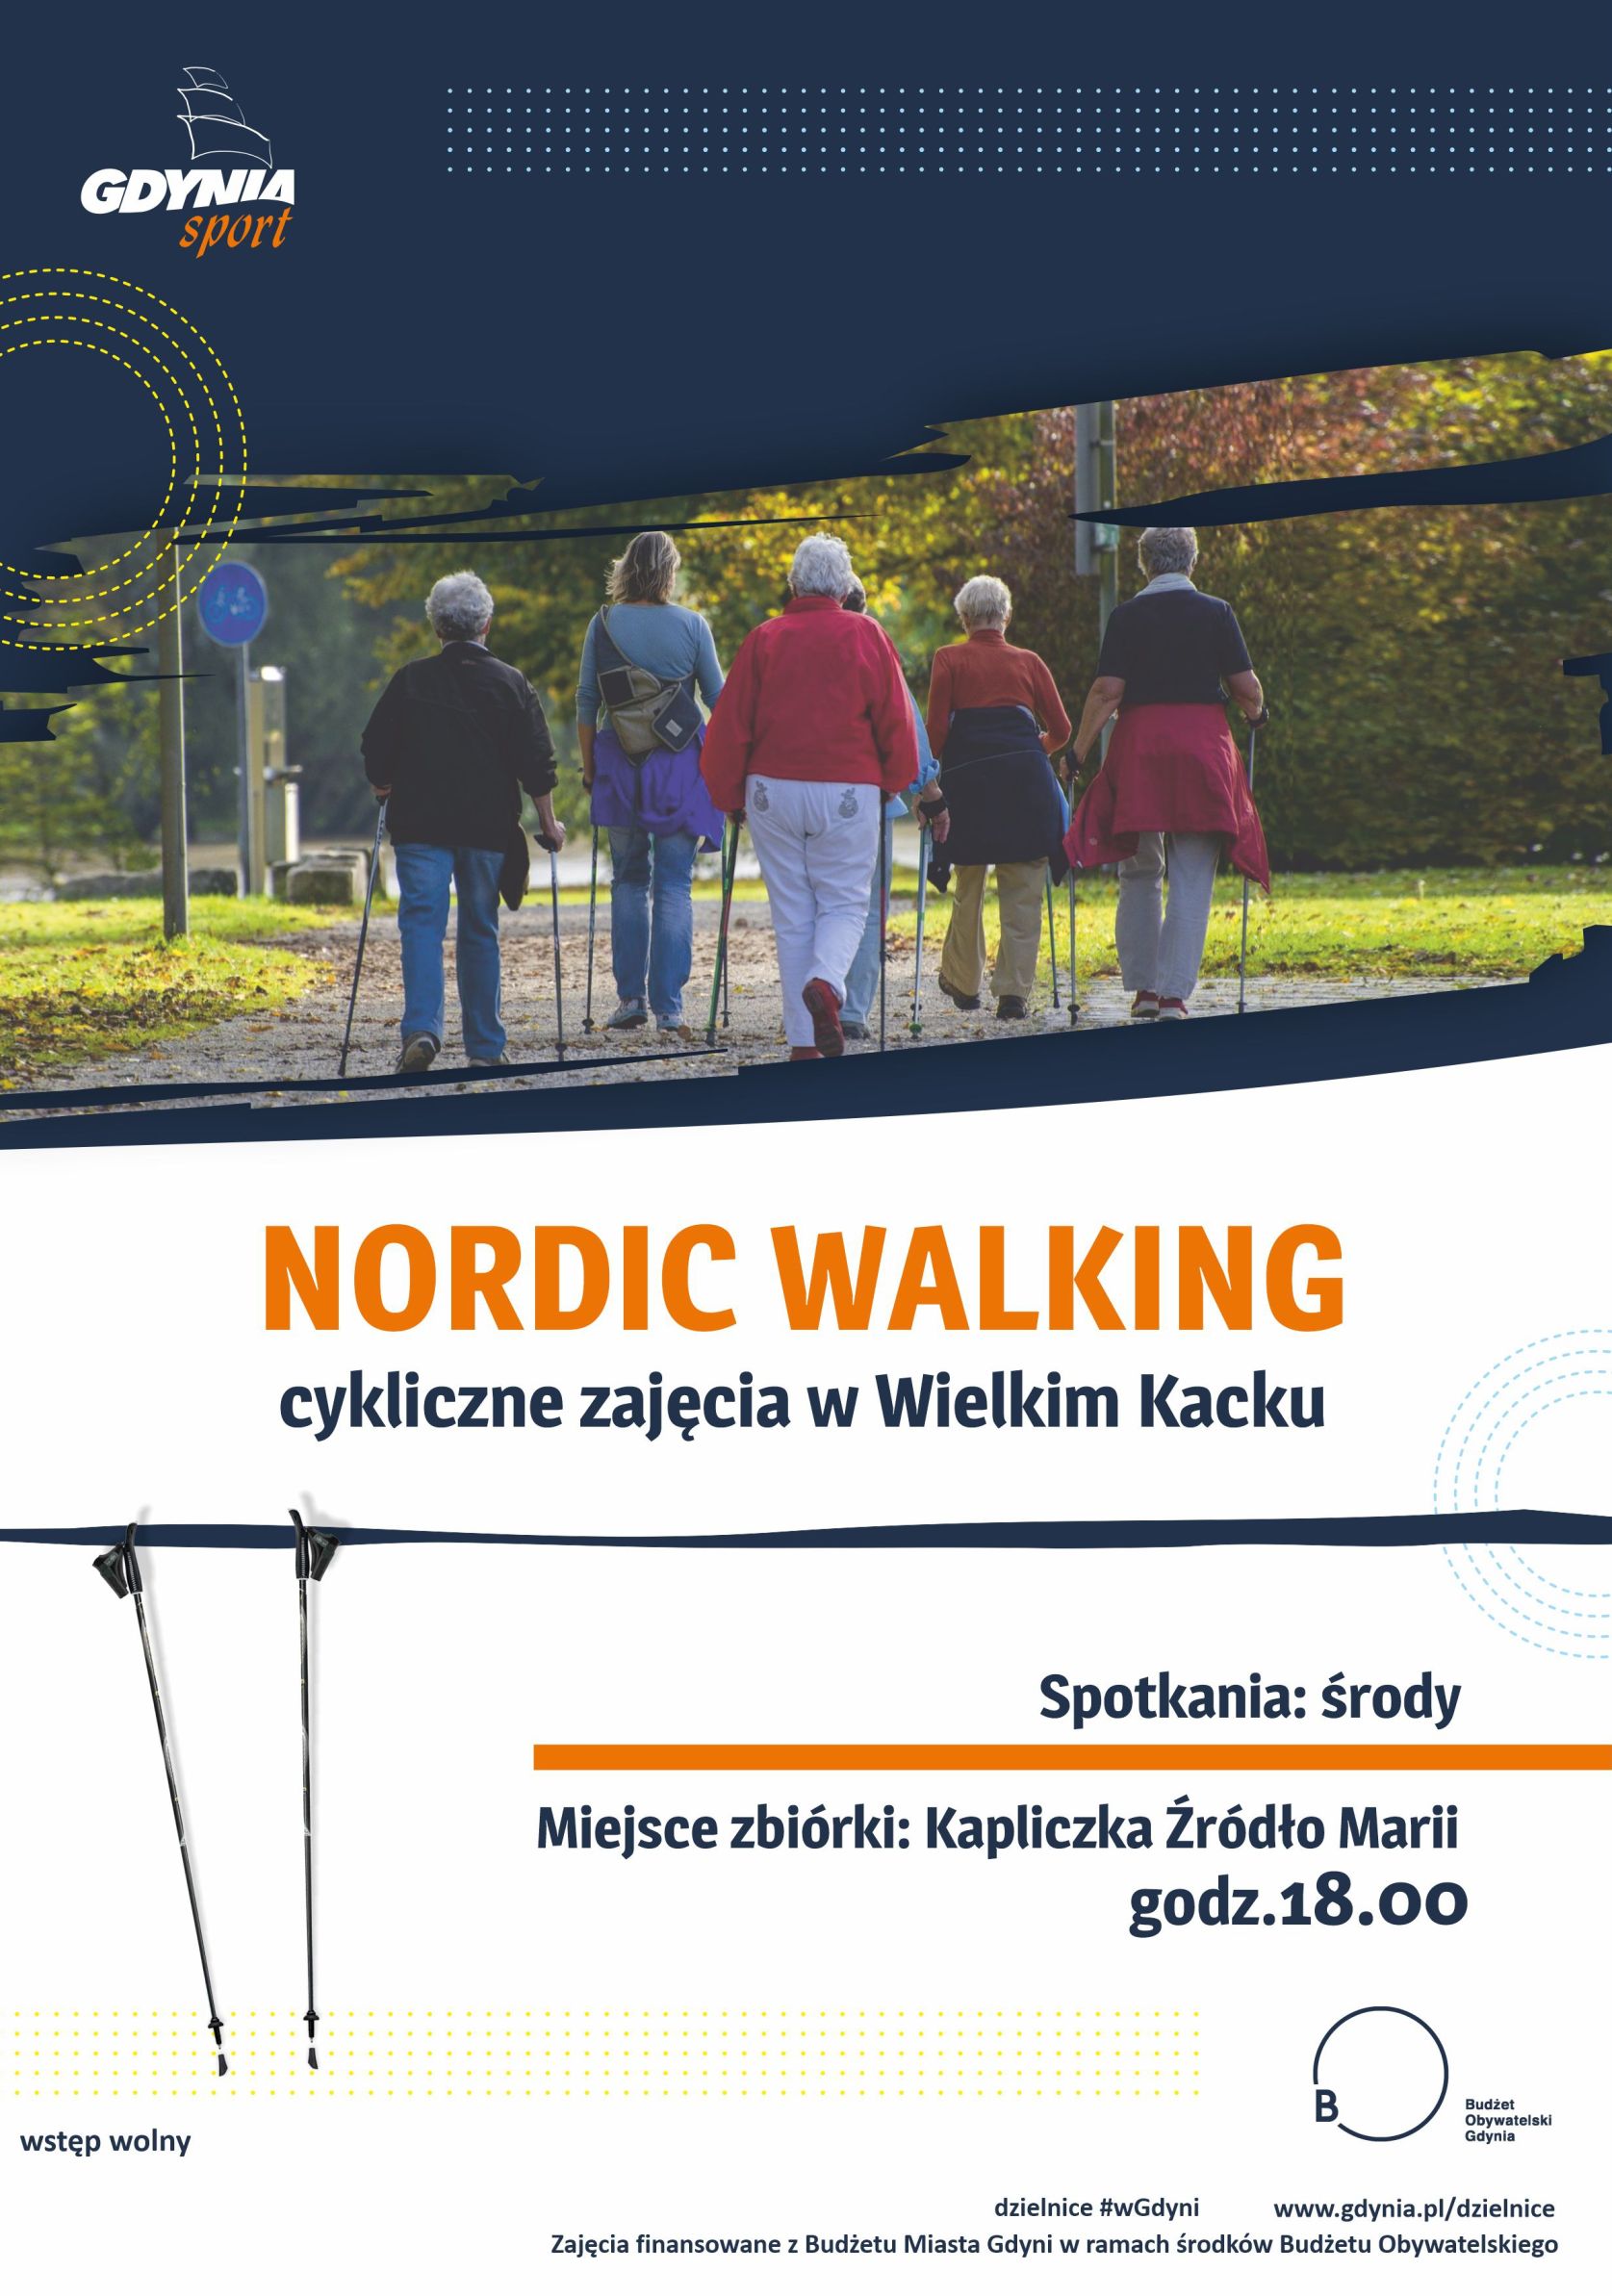 Zajęcia nordic walking na Wielkim Kacku